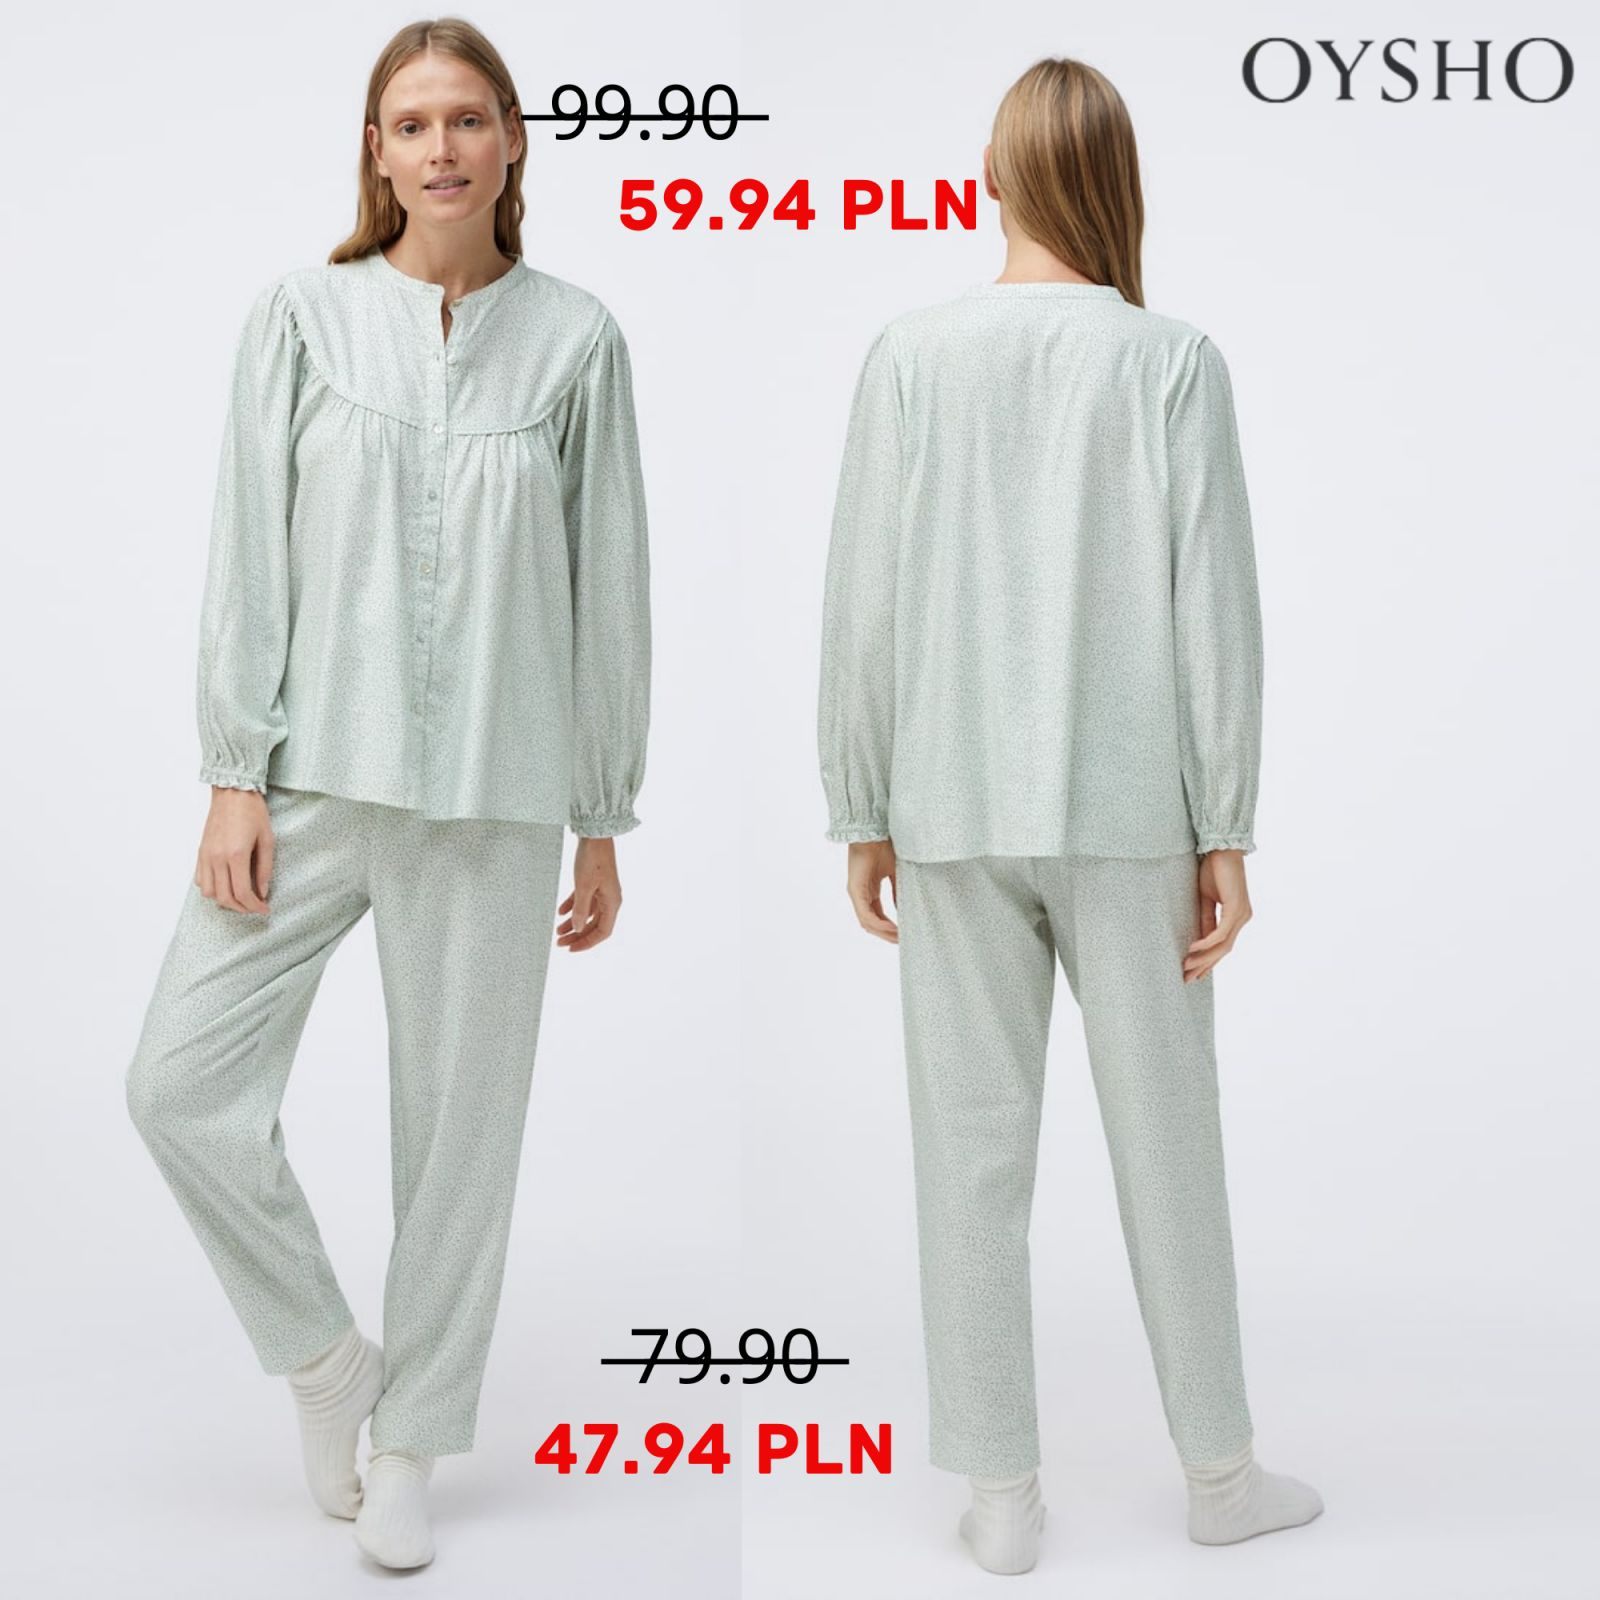 Multicoloured floral shirt - Pyjamas - Pyjamas and homewear, Oysho Islas  Canarias